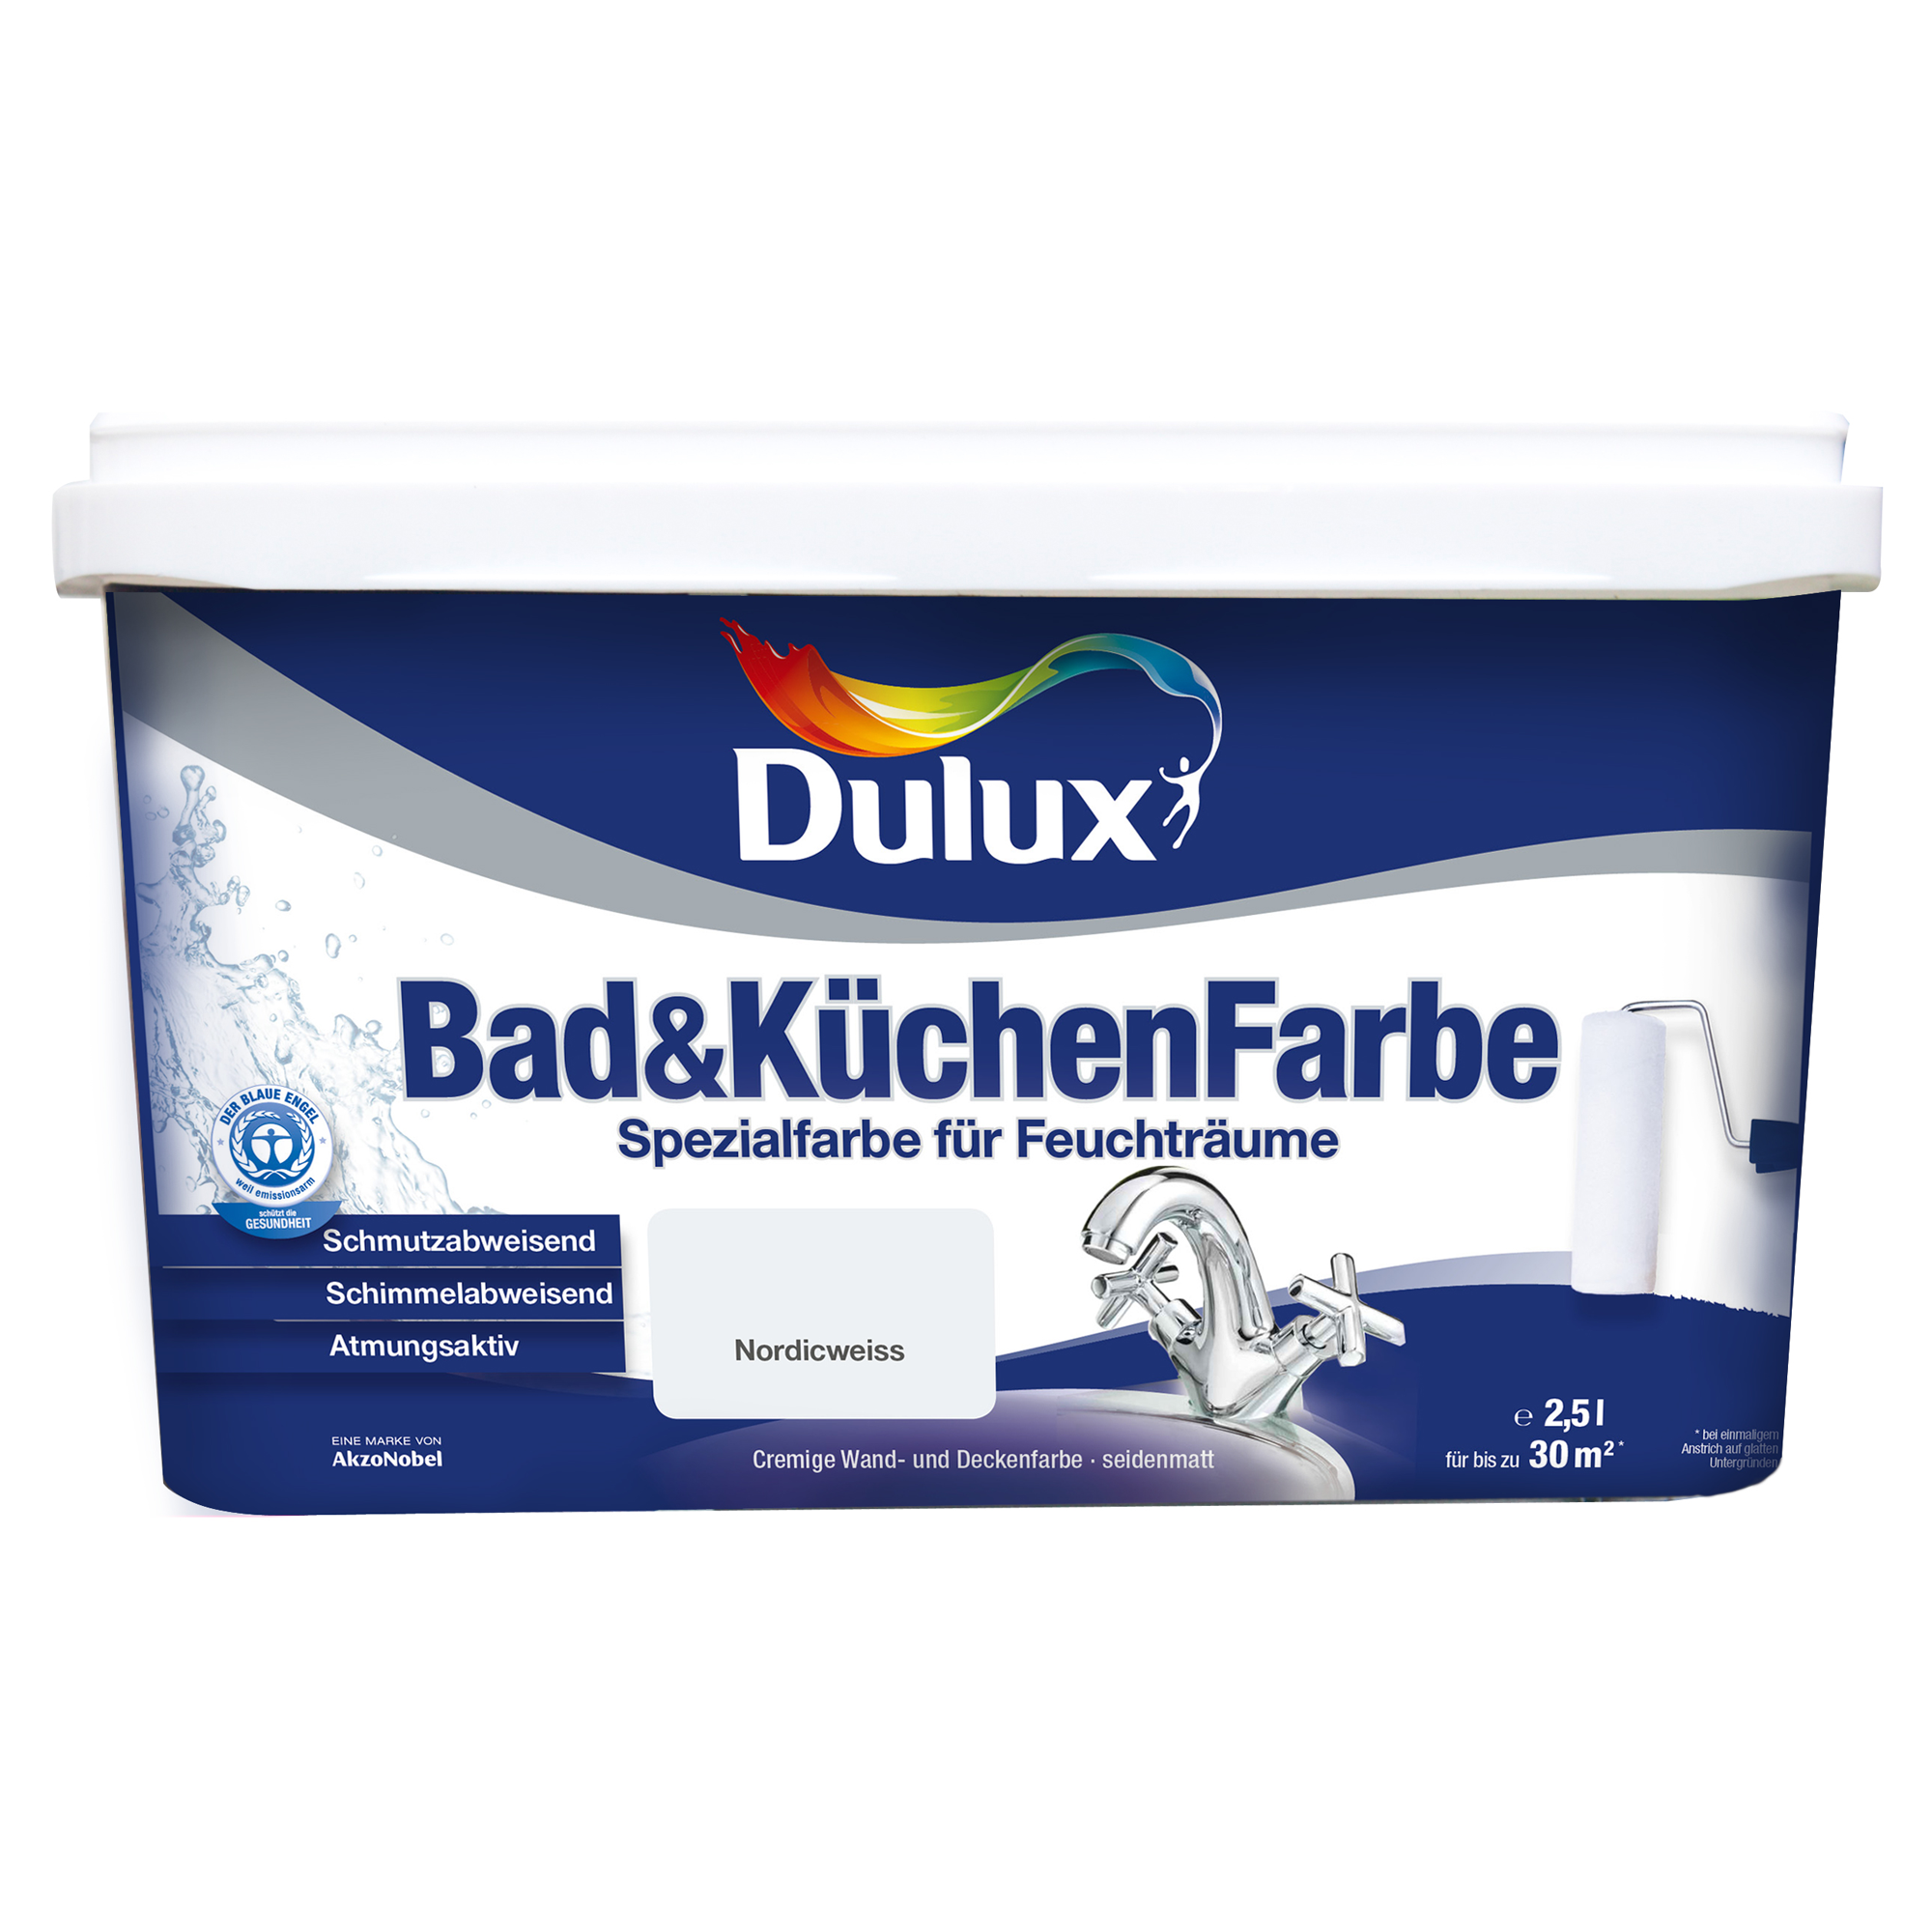 Dulux Bad & Küchenfarbe nordicweiß 2,5 l